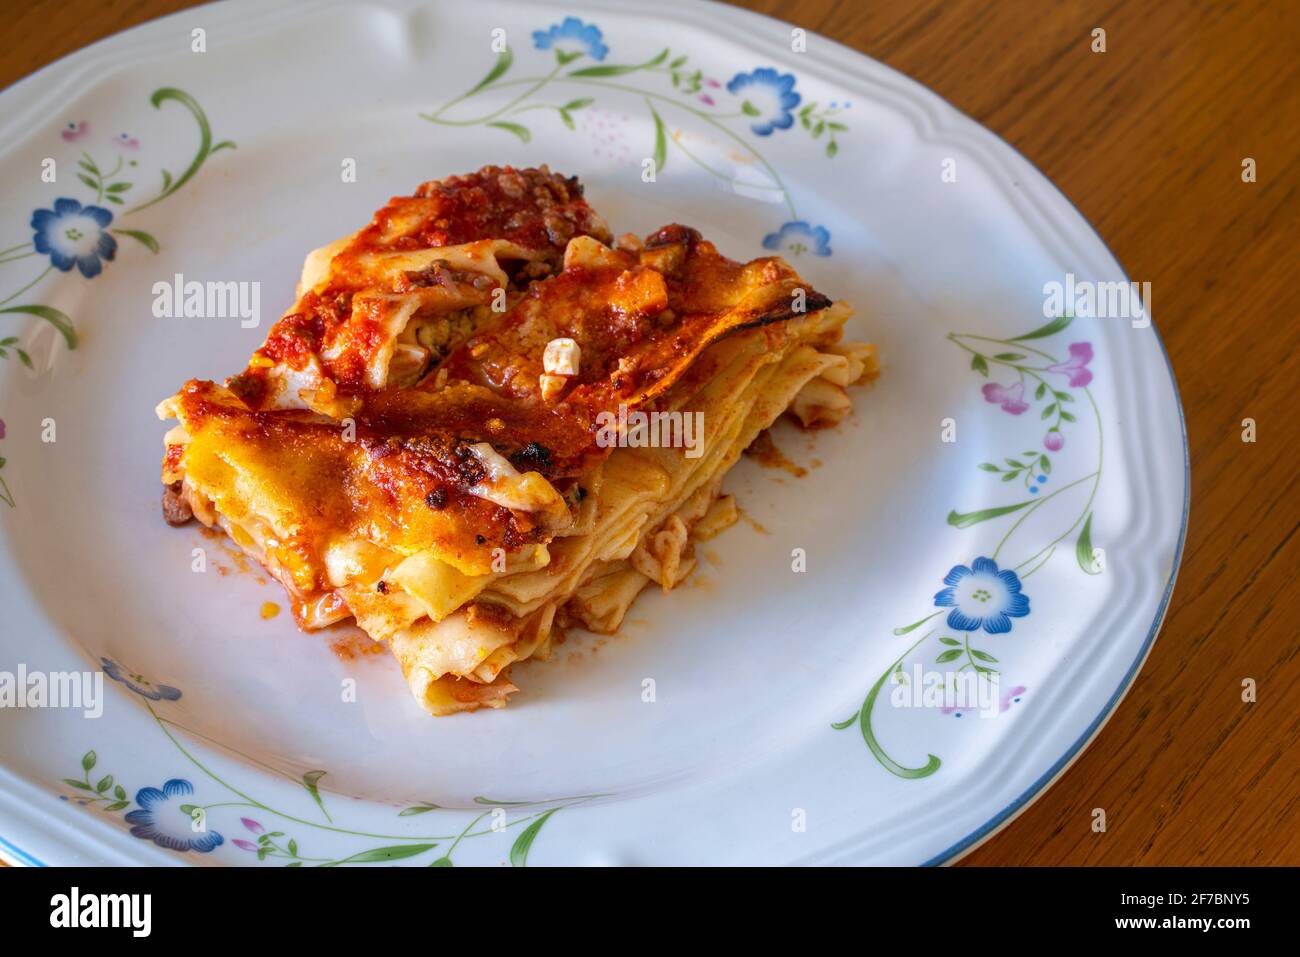 Porzione di lasagne fatte in casa con uova, salsa di pomodoro, pasta fatta a mano, ragù e mozzarella. Piatto tipico italiano. Abruzzo, Italia, Europa Foto Stock